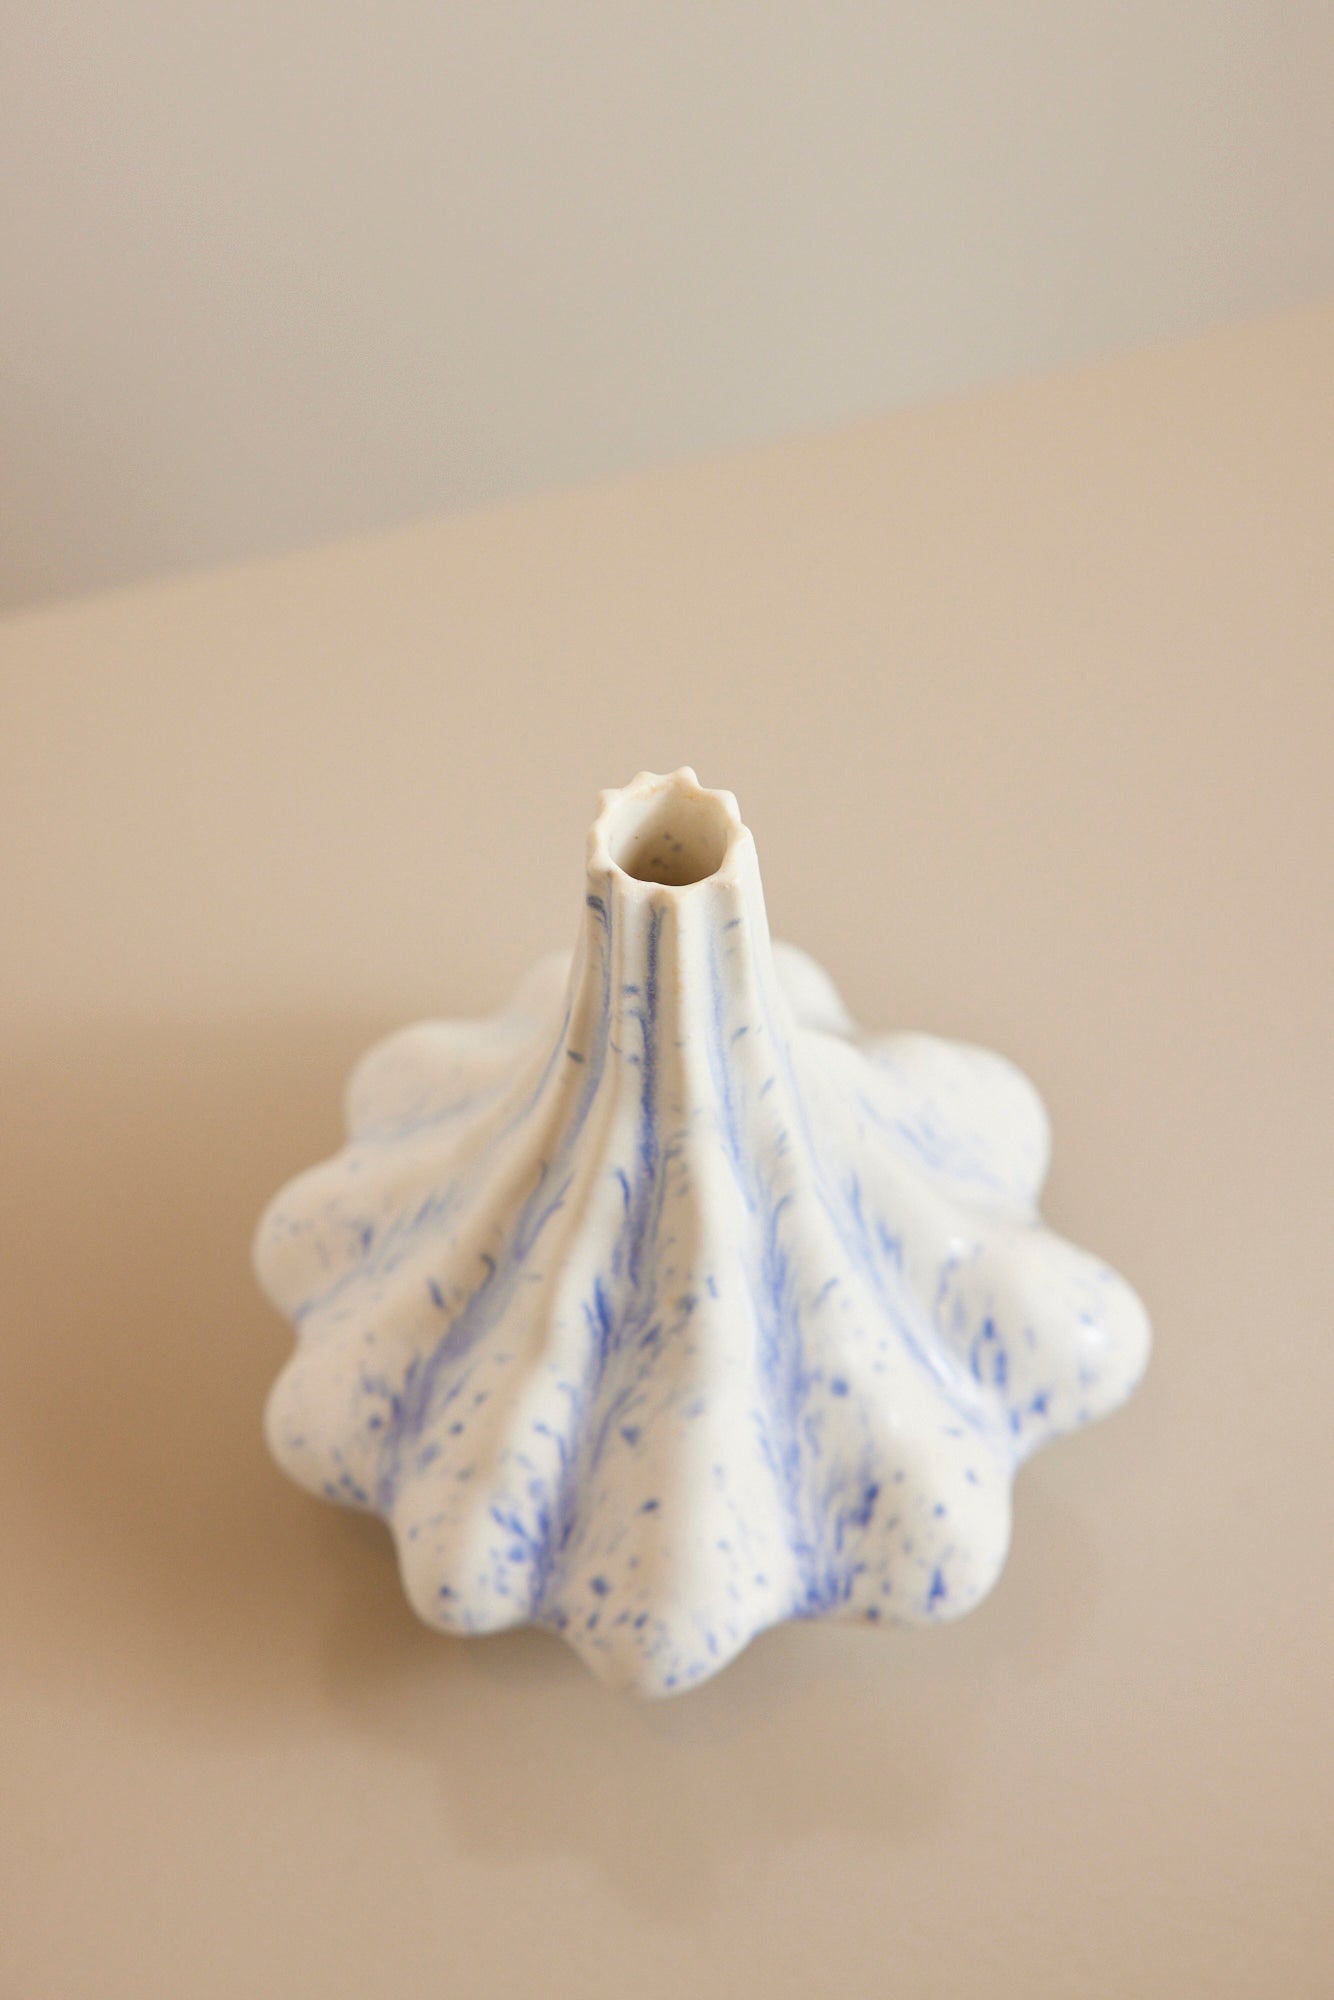 Thora Finnsdottir - Volcano Flower Vase, bulky